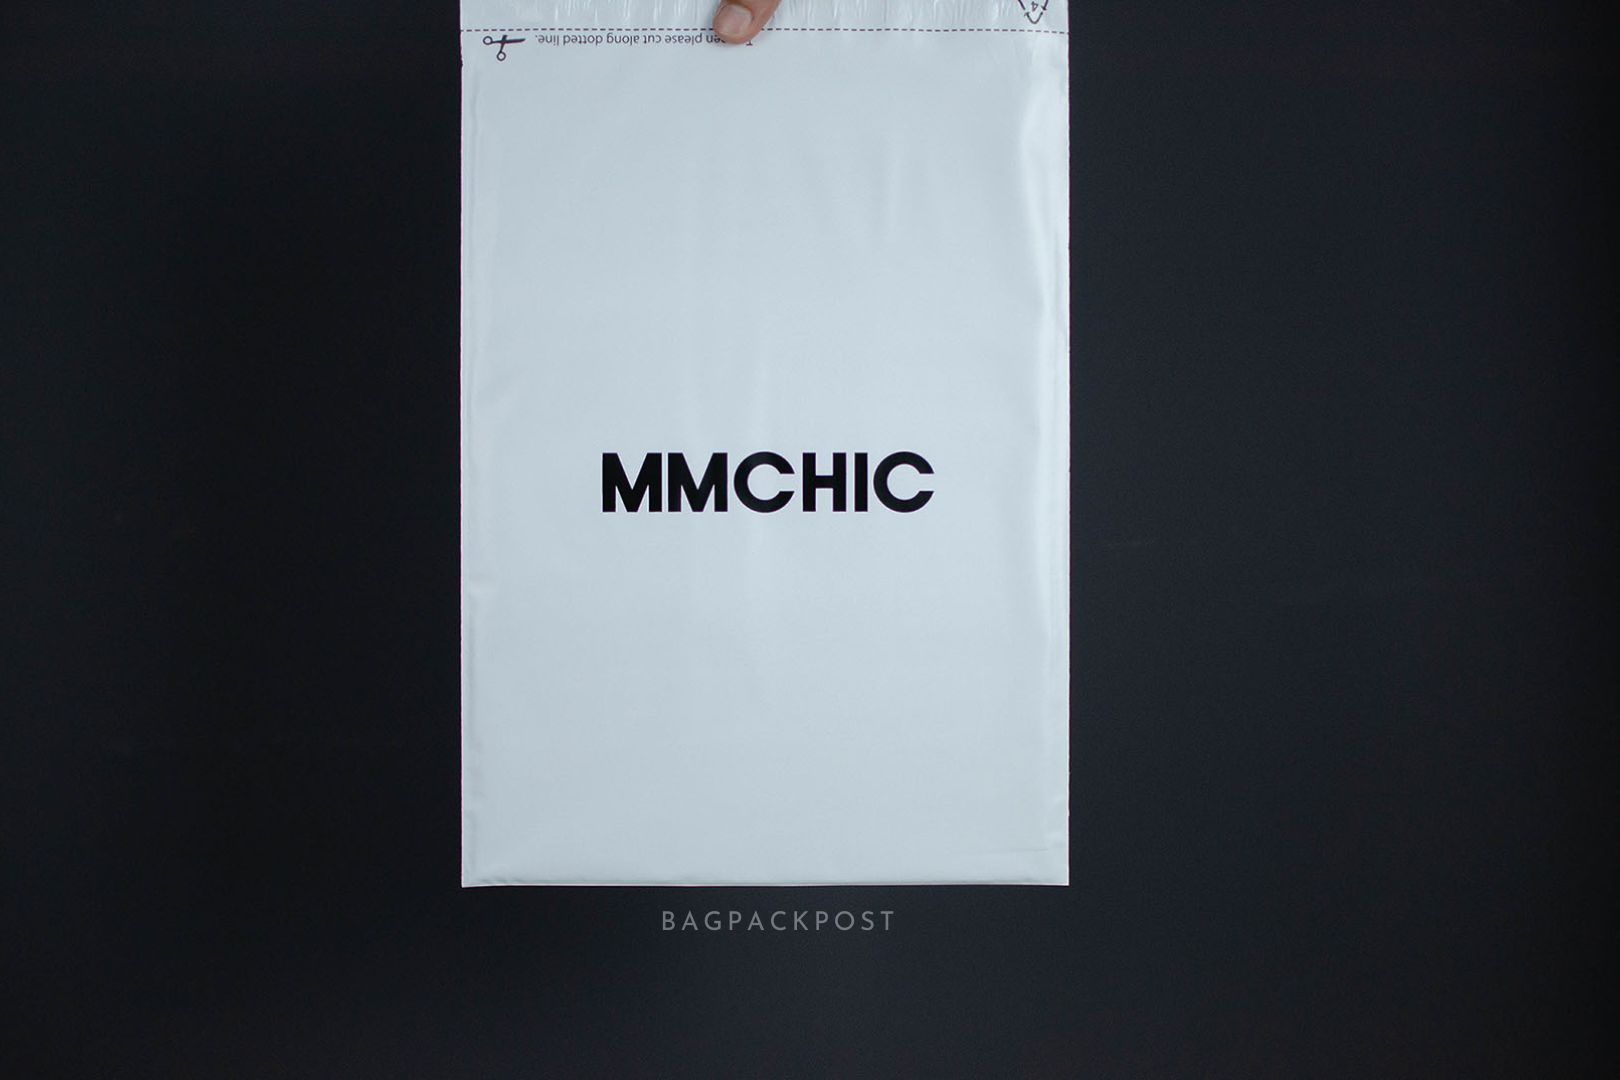 ผลิตถุงไปรษณีย์ ซองไปรษณีย์พิมพ์ลาย mmchic ซองไปรษณีย์สีขาว ถุงไปรษณีย์พิมพ์ลาย 3 BagPackPost